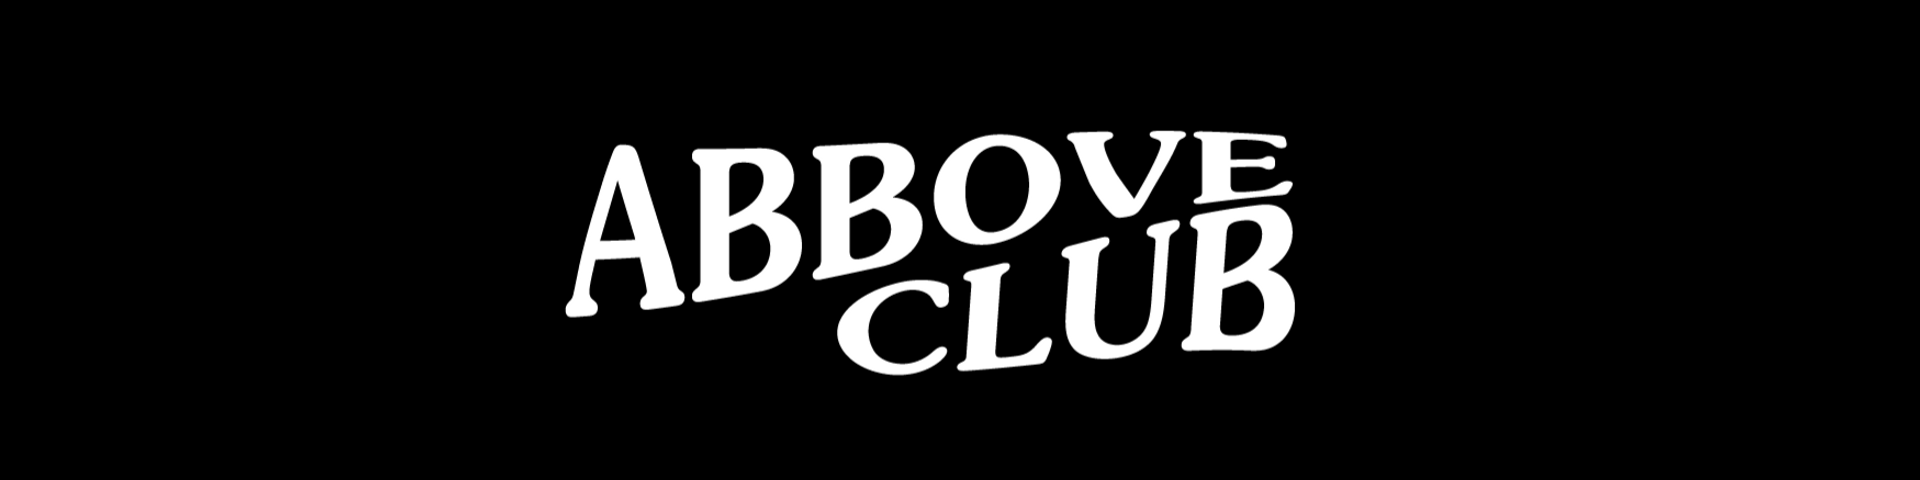 Nome da loja  Abbove Club